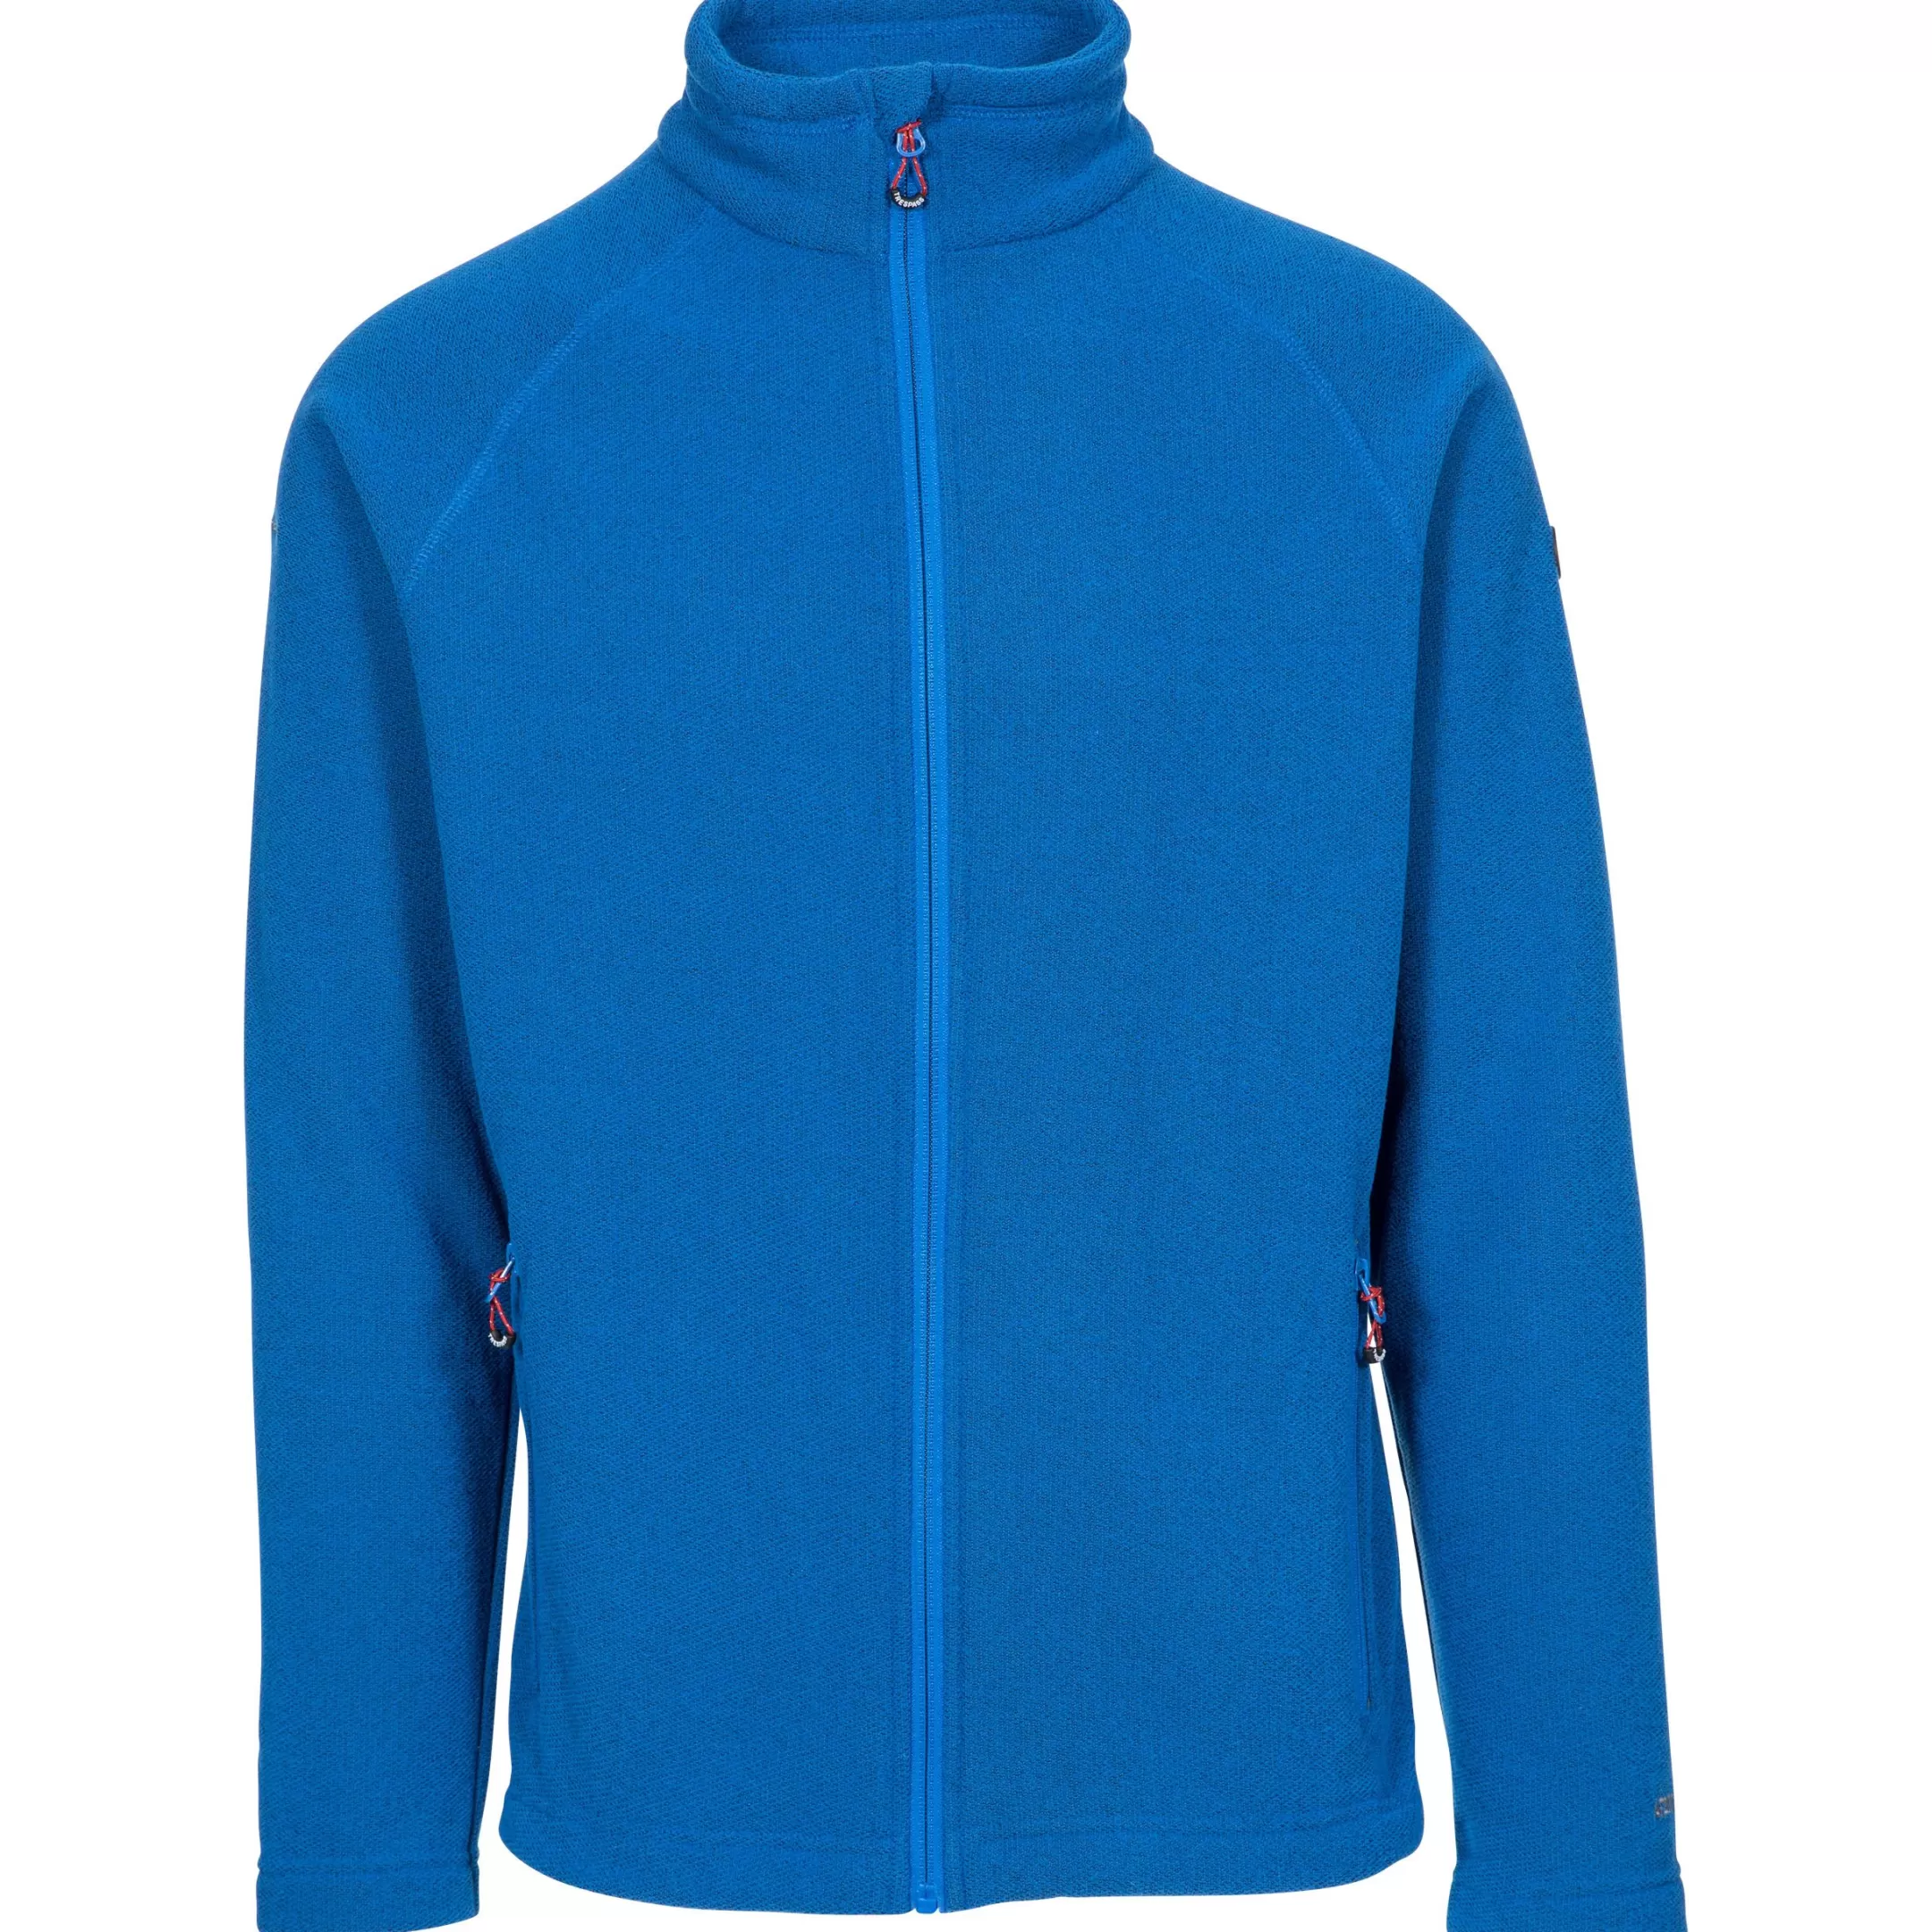 Adults Fleece Jacket Full Zip 2 Pockets Steadburn | Trespass Cheap